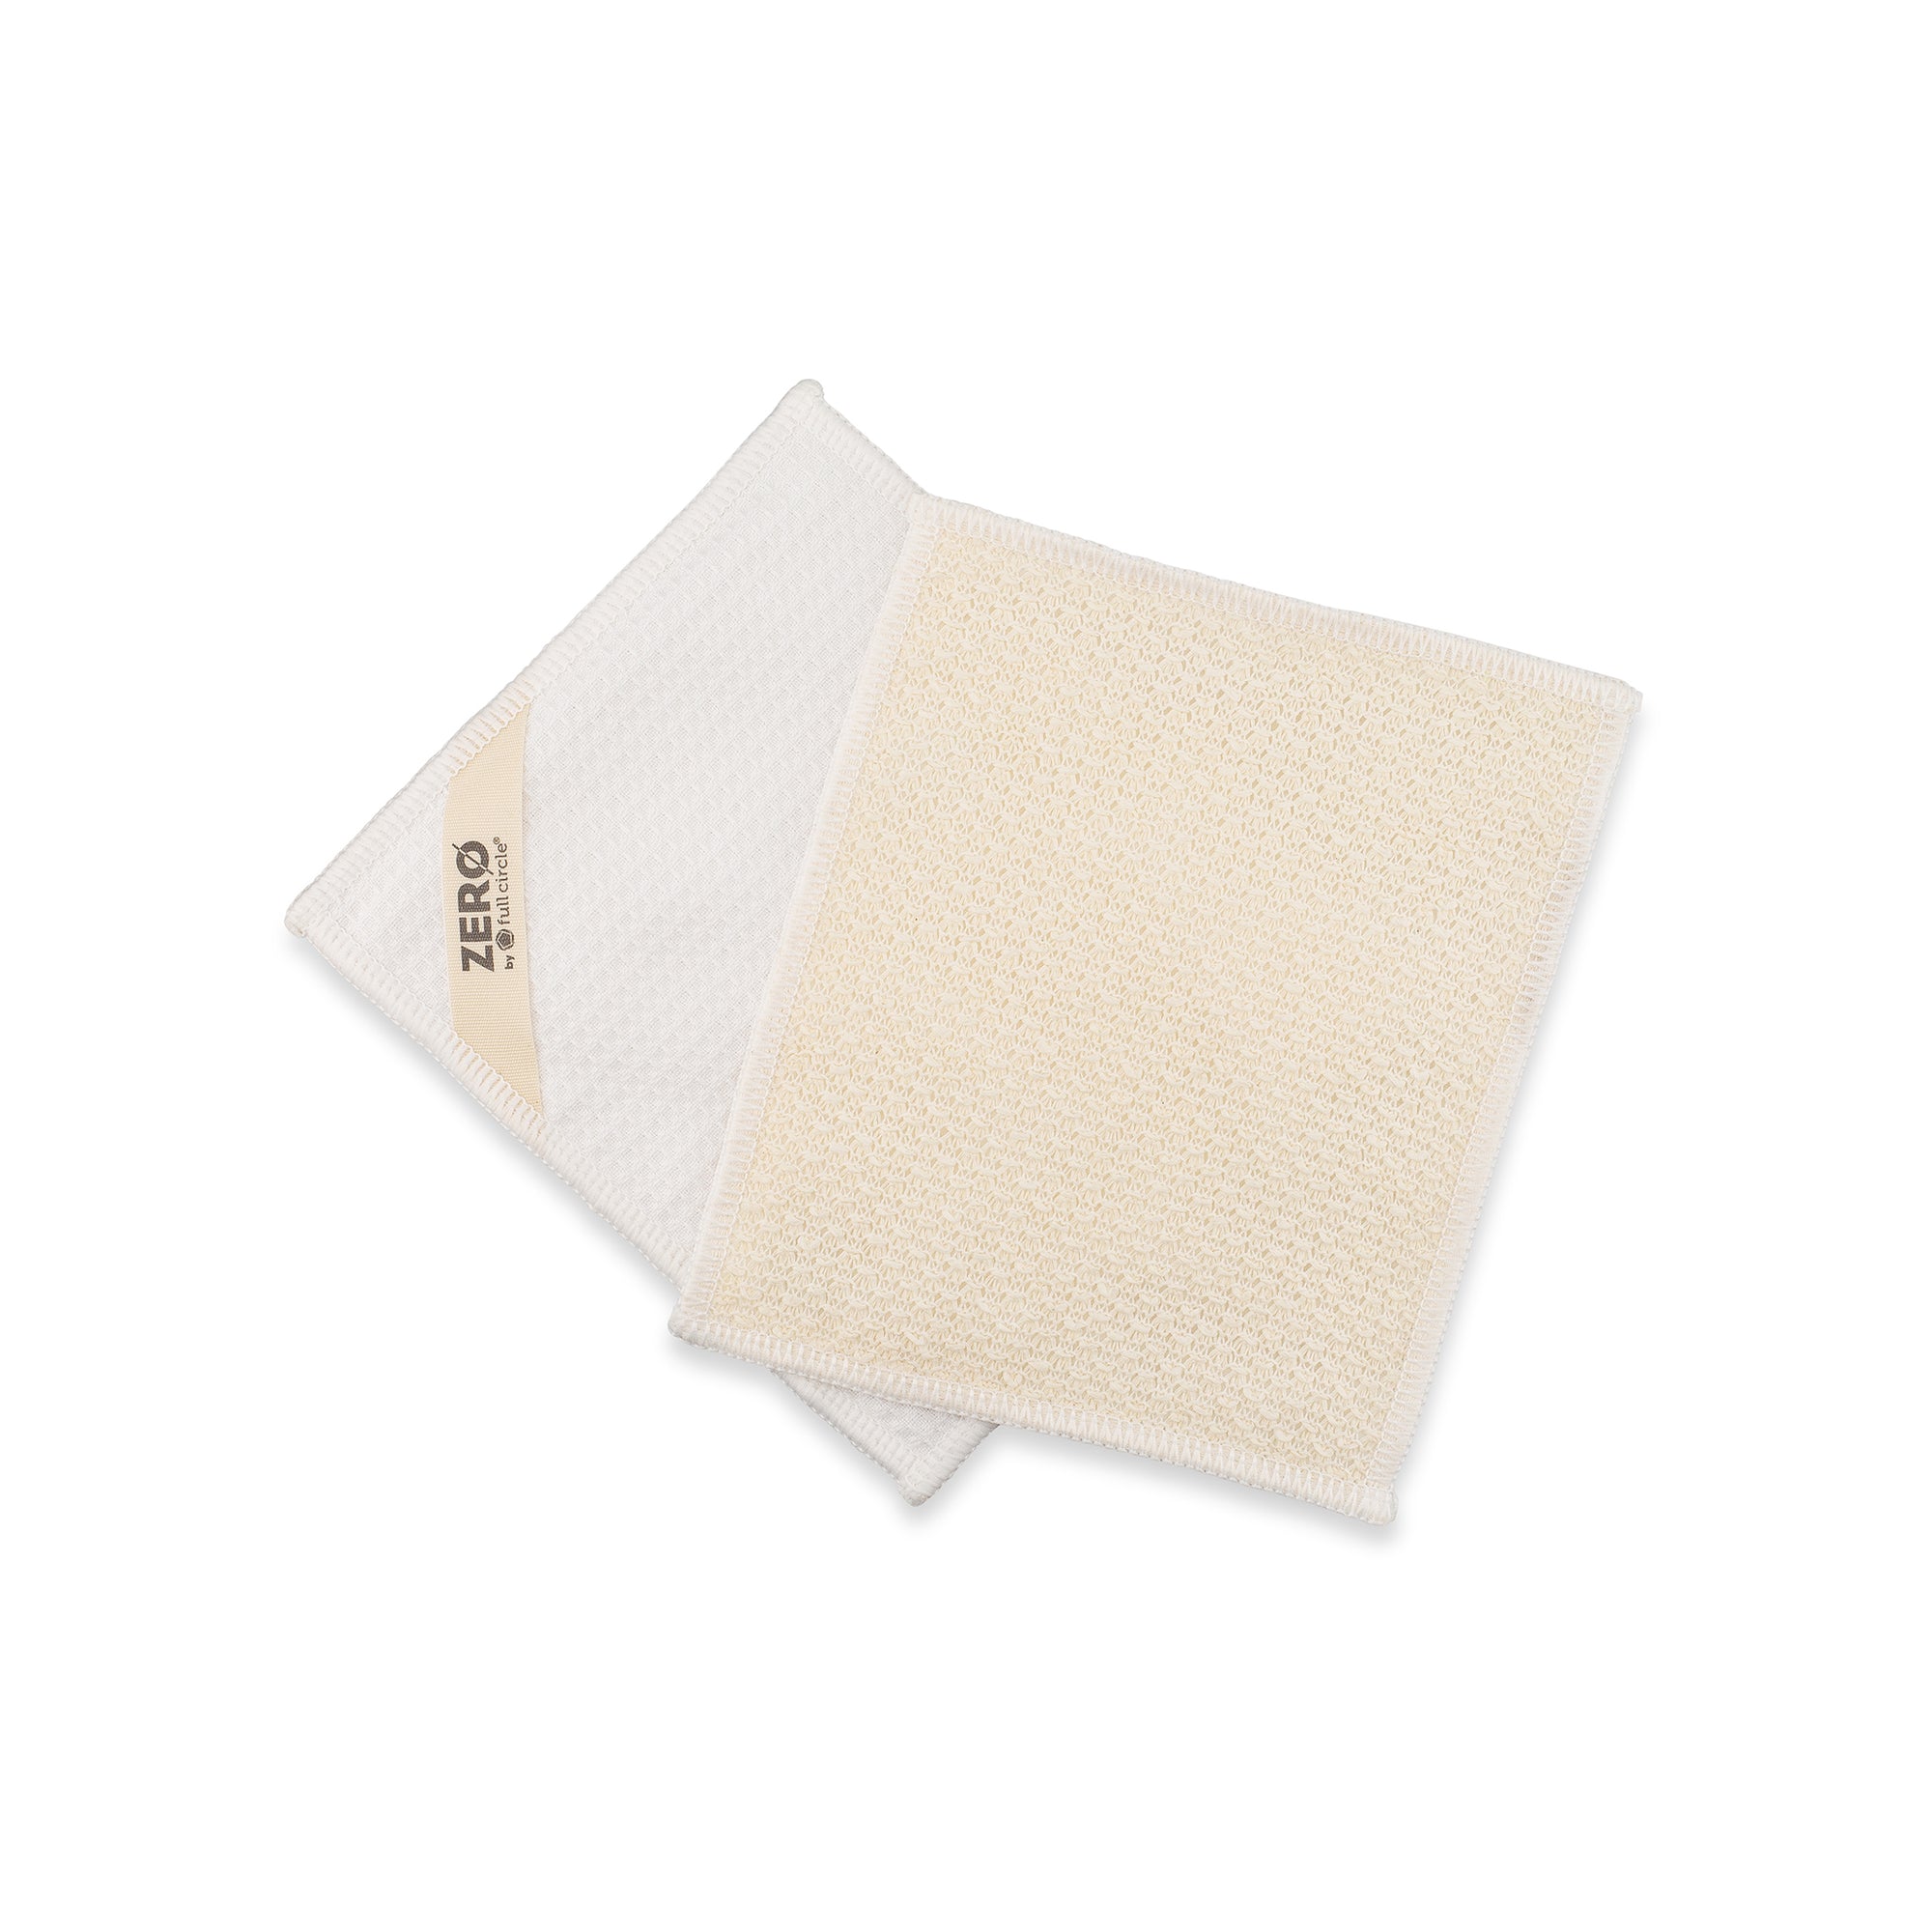 ZERO WASTE full set, Linen washcloth, Linen reusable sponge